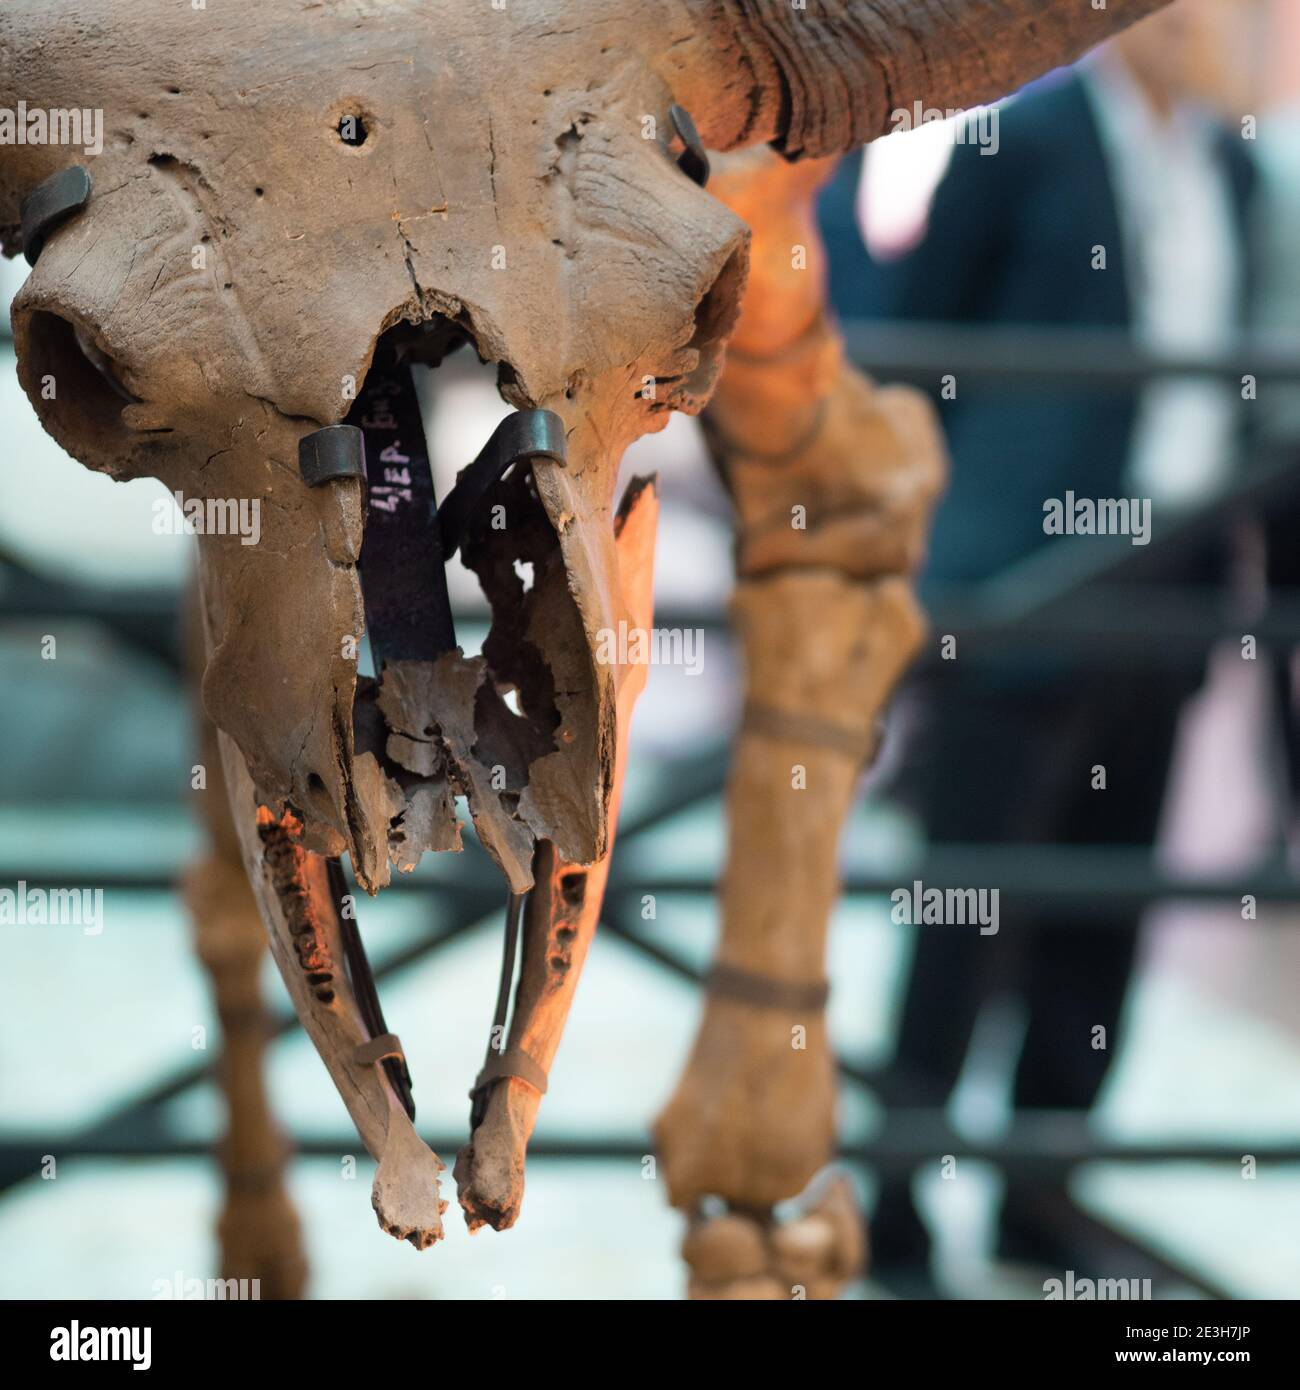 SAN PIETROBURGO, RUSSIA - 8 OTTOBRE 2019: Cranio di un animale fossile o di un dinosauro, ricostruzione, mostra di scheletri di rettili preistorici. Foto Stock